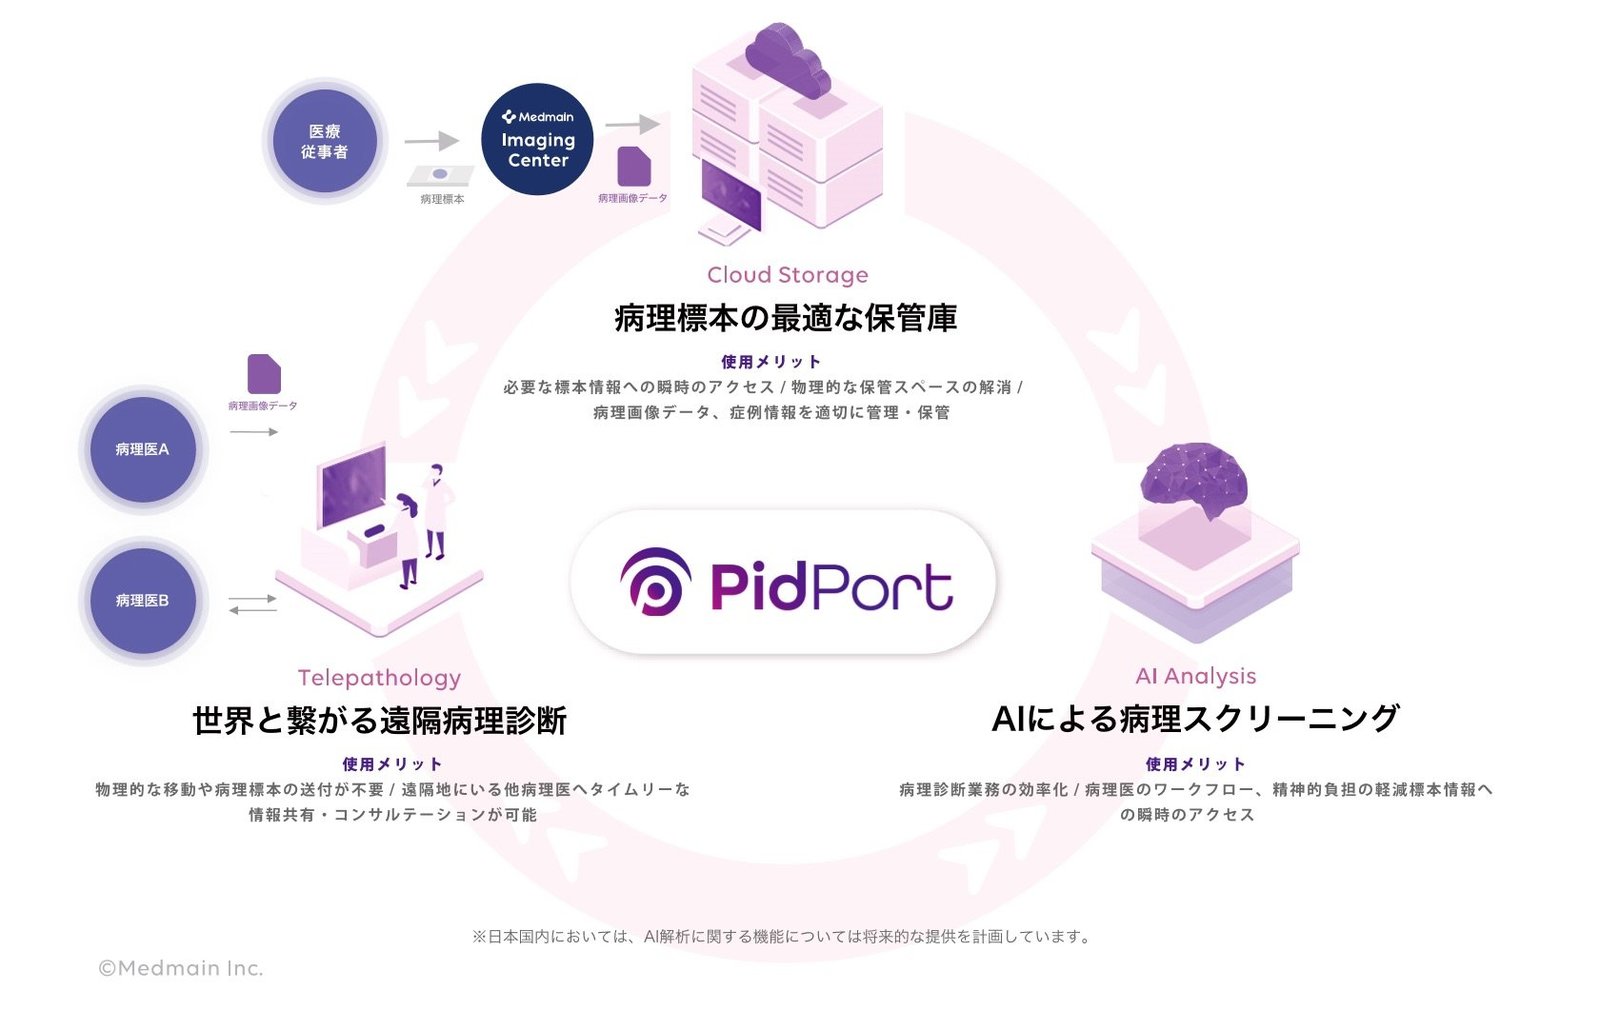 PidPortには大きく3つの機能が内包されている